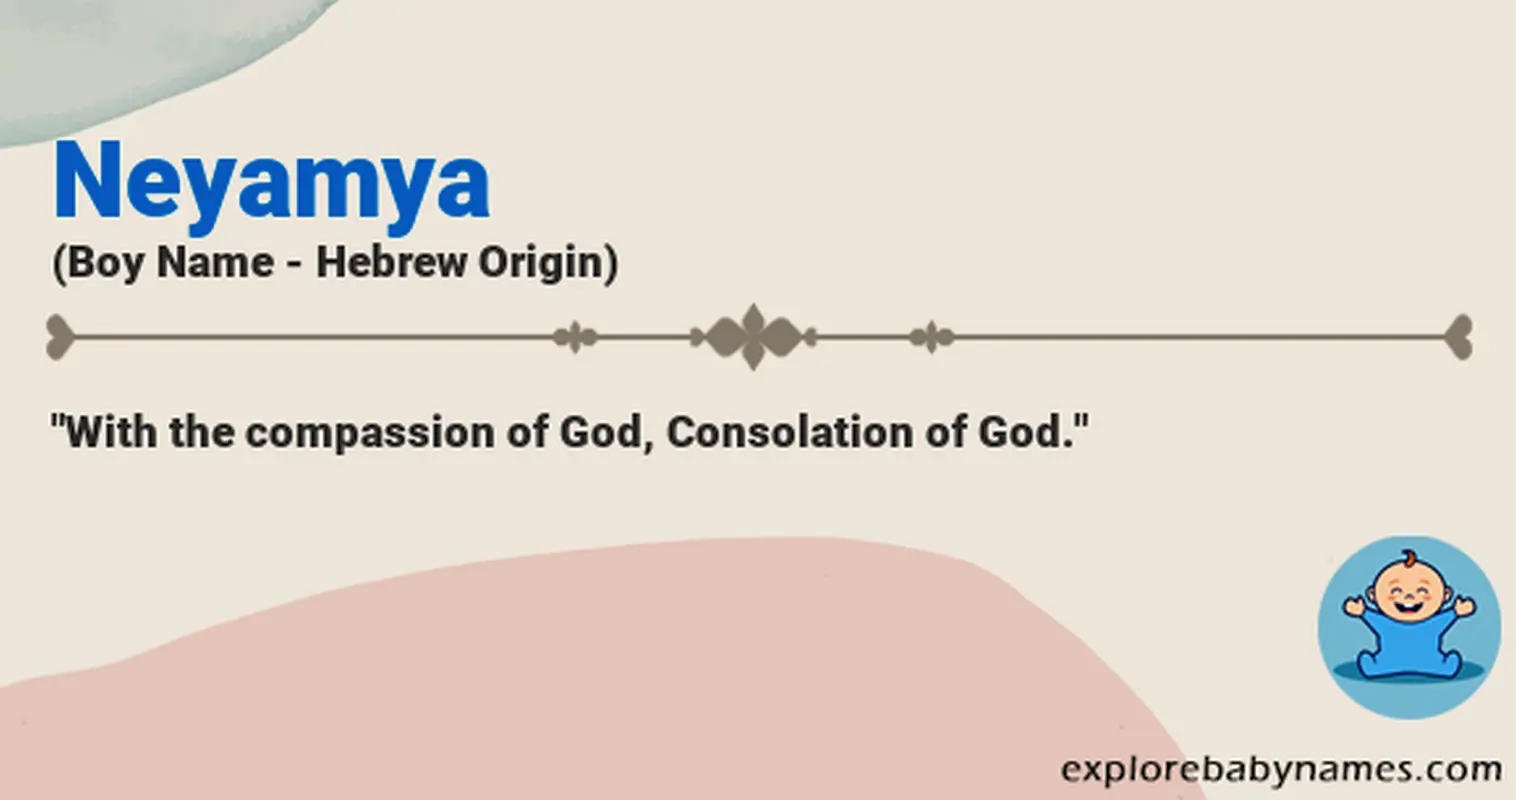 Meaning of Neyamya